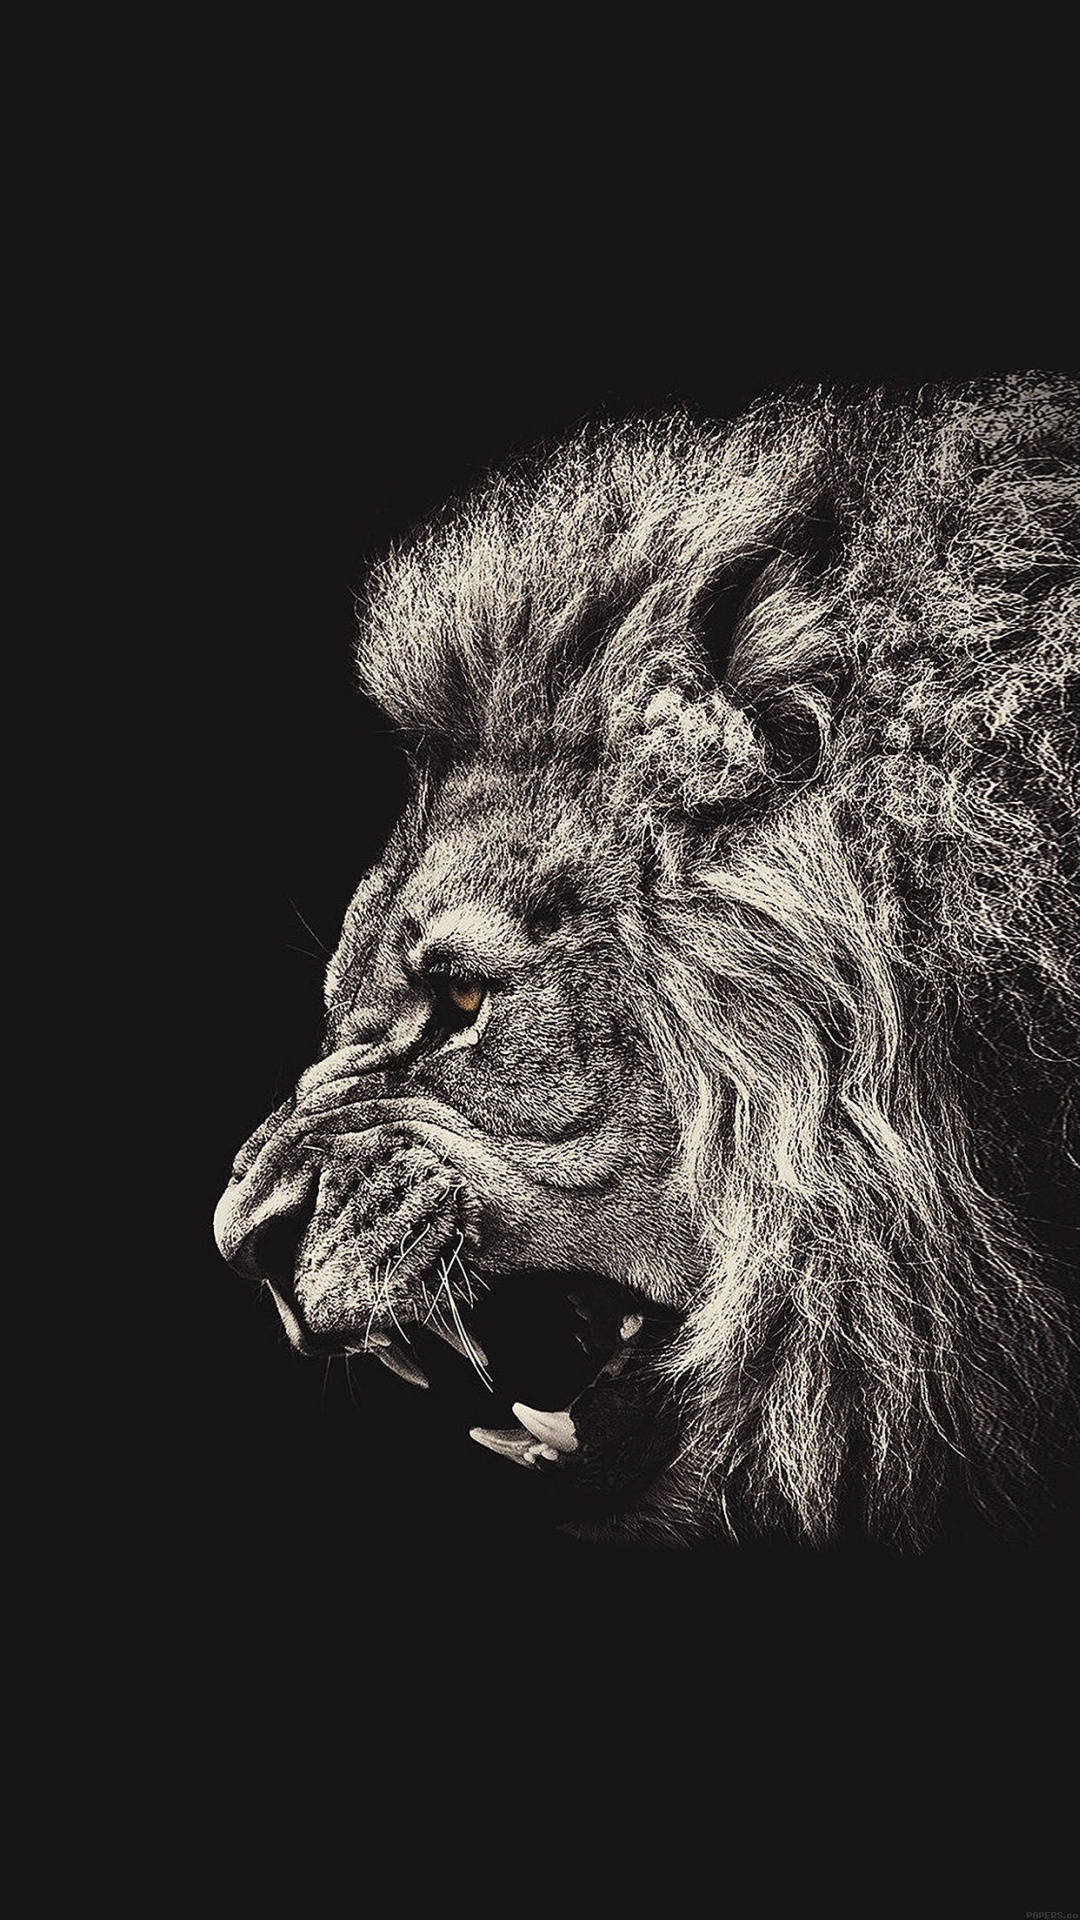 Fierce Roaring Lion Top Iphone Hd Background